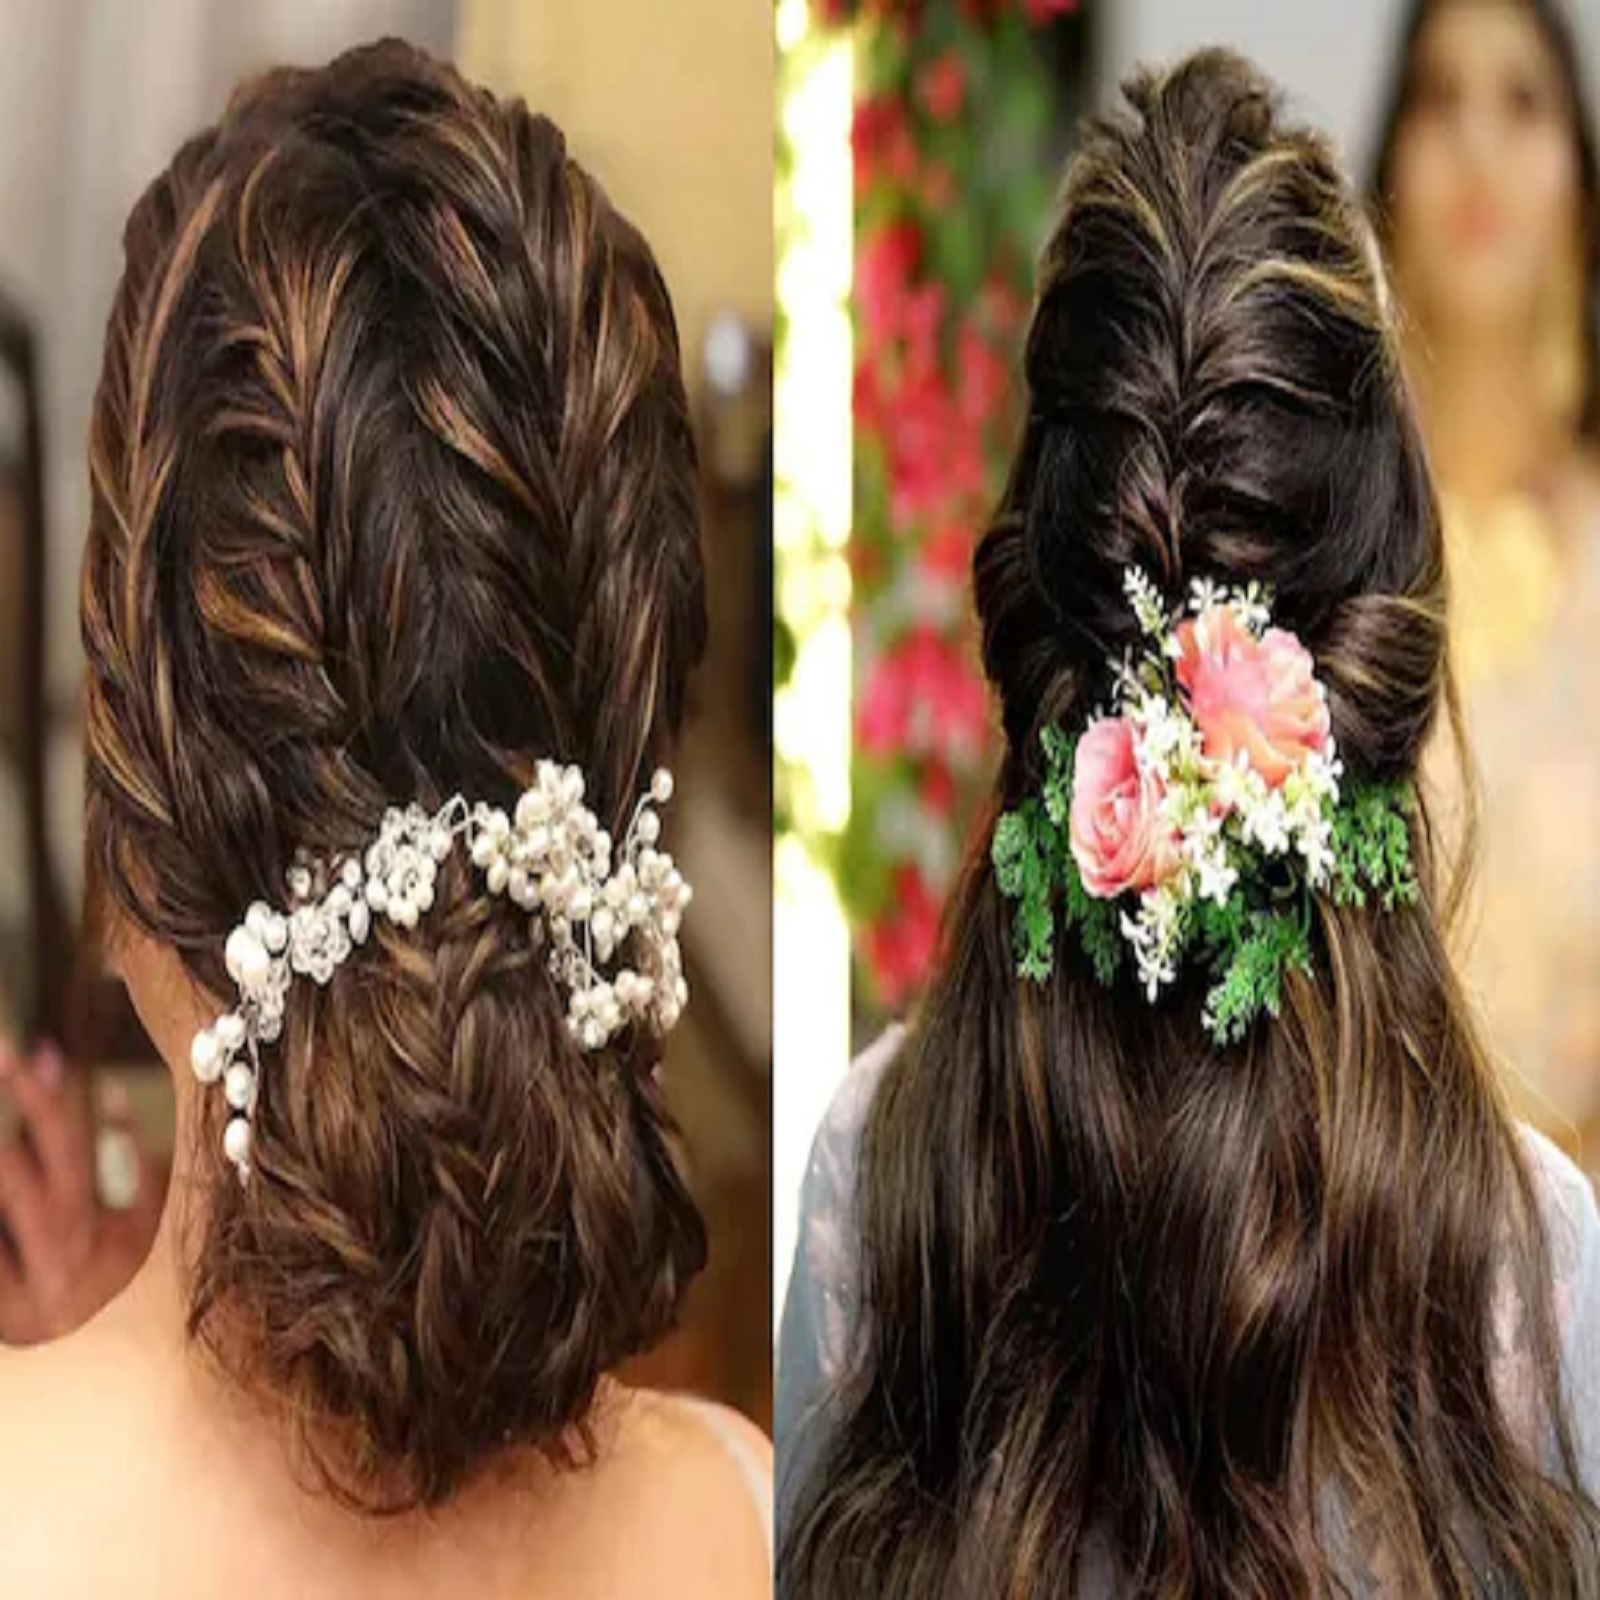 karwa chauth hairstyle: आलिया भट्ट के 9 यून‍िक हेयरस्‍टाइल, जो साड़ी और  लहंगे पर लगेंगे खूब प्‍यारें | karwa chauth hairstyle easy: Alia Bhatt  inspired hairstyles that you can recreate see photos -